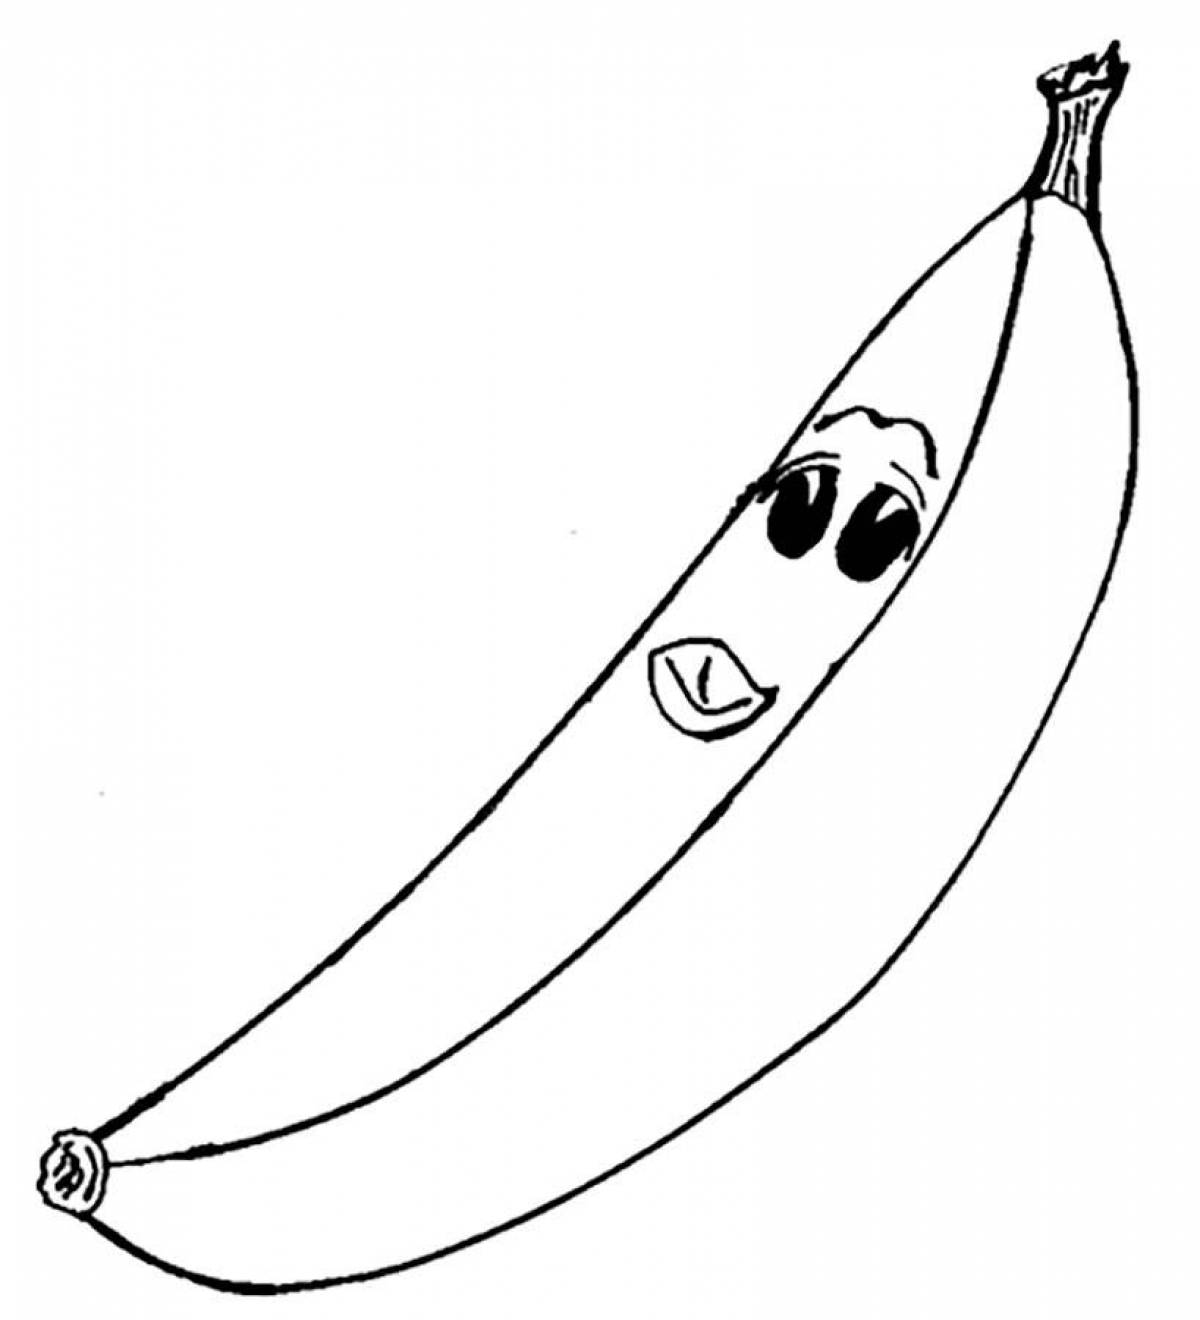 Fun banana coloring for kids